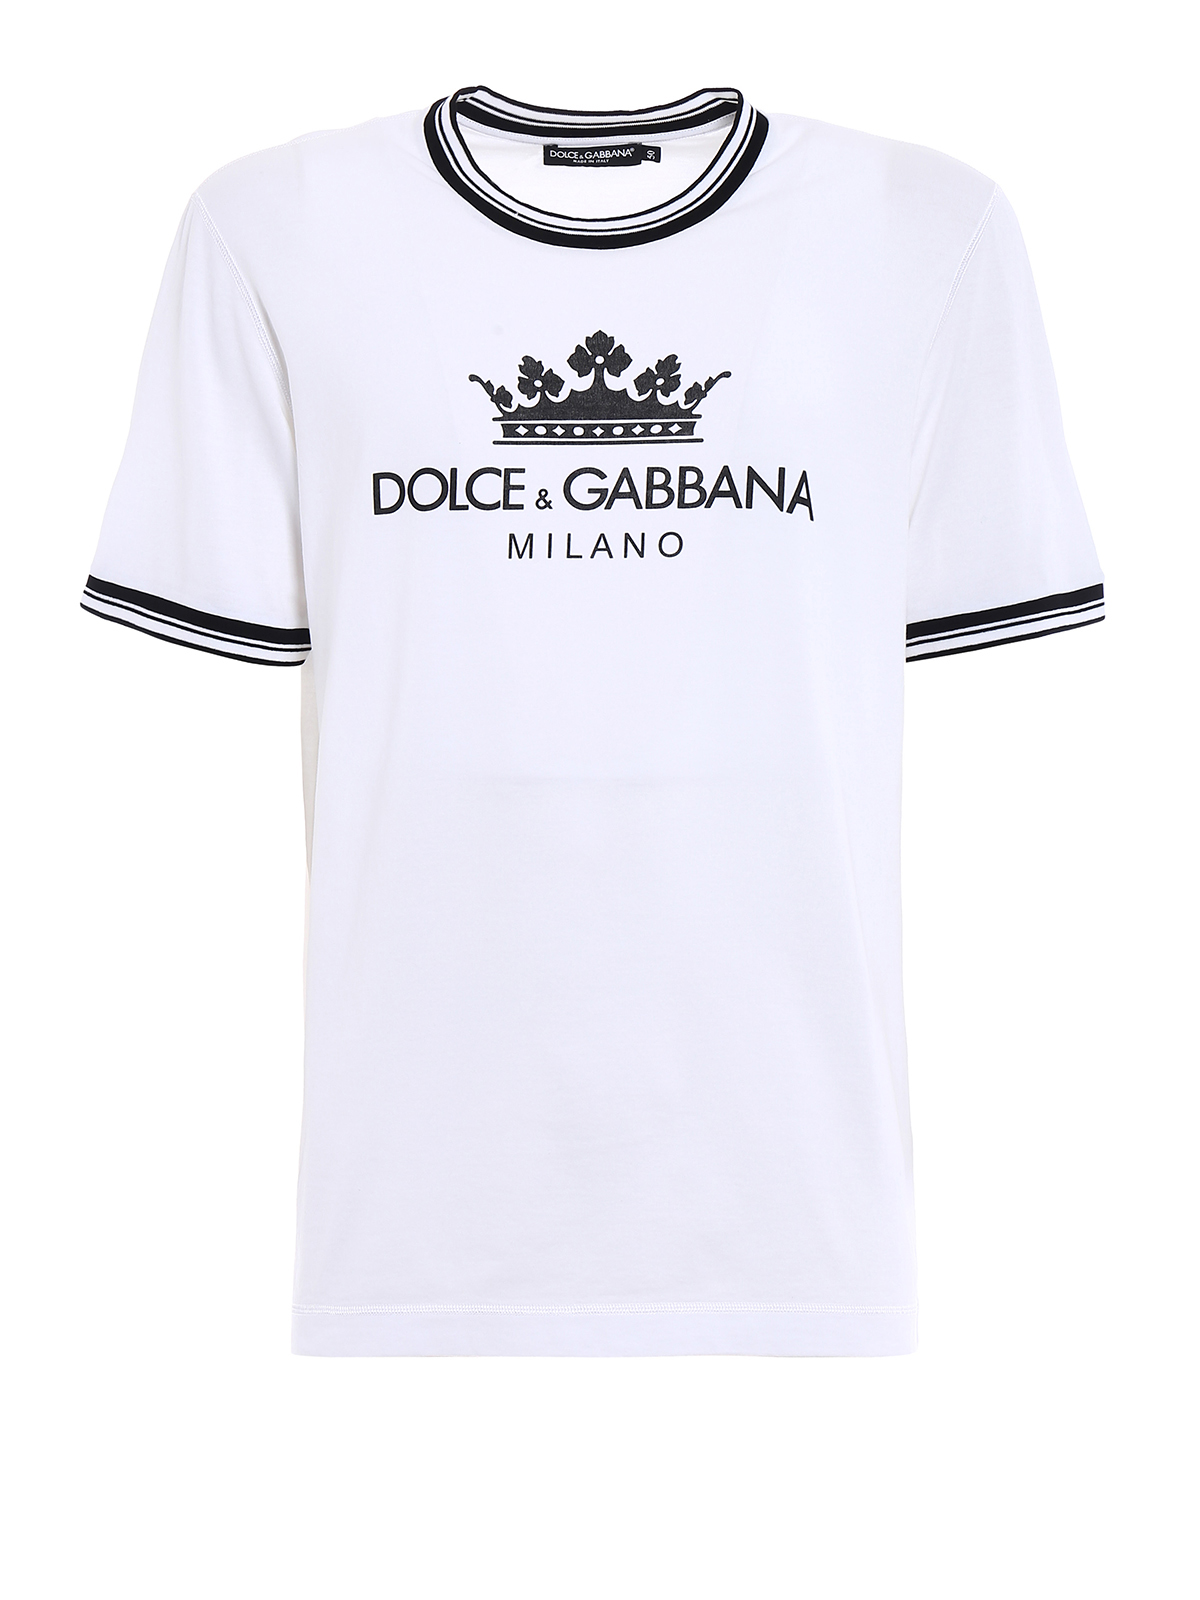 dolce and gabbana milano shirt